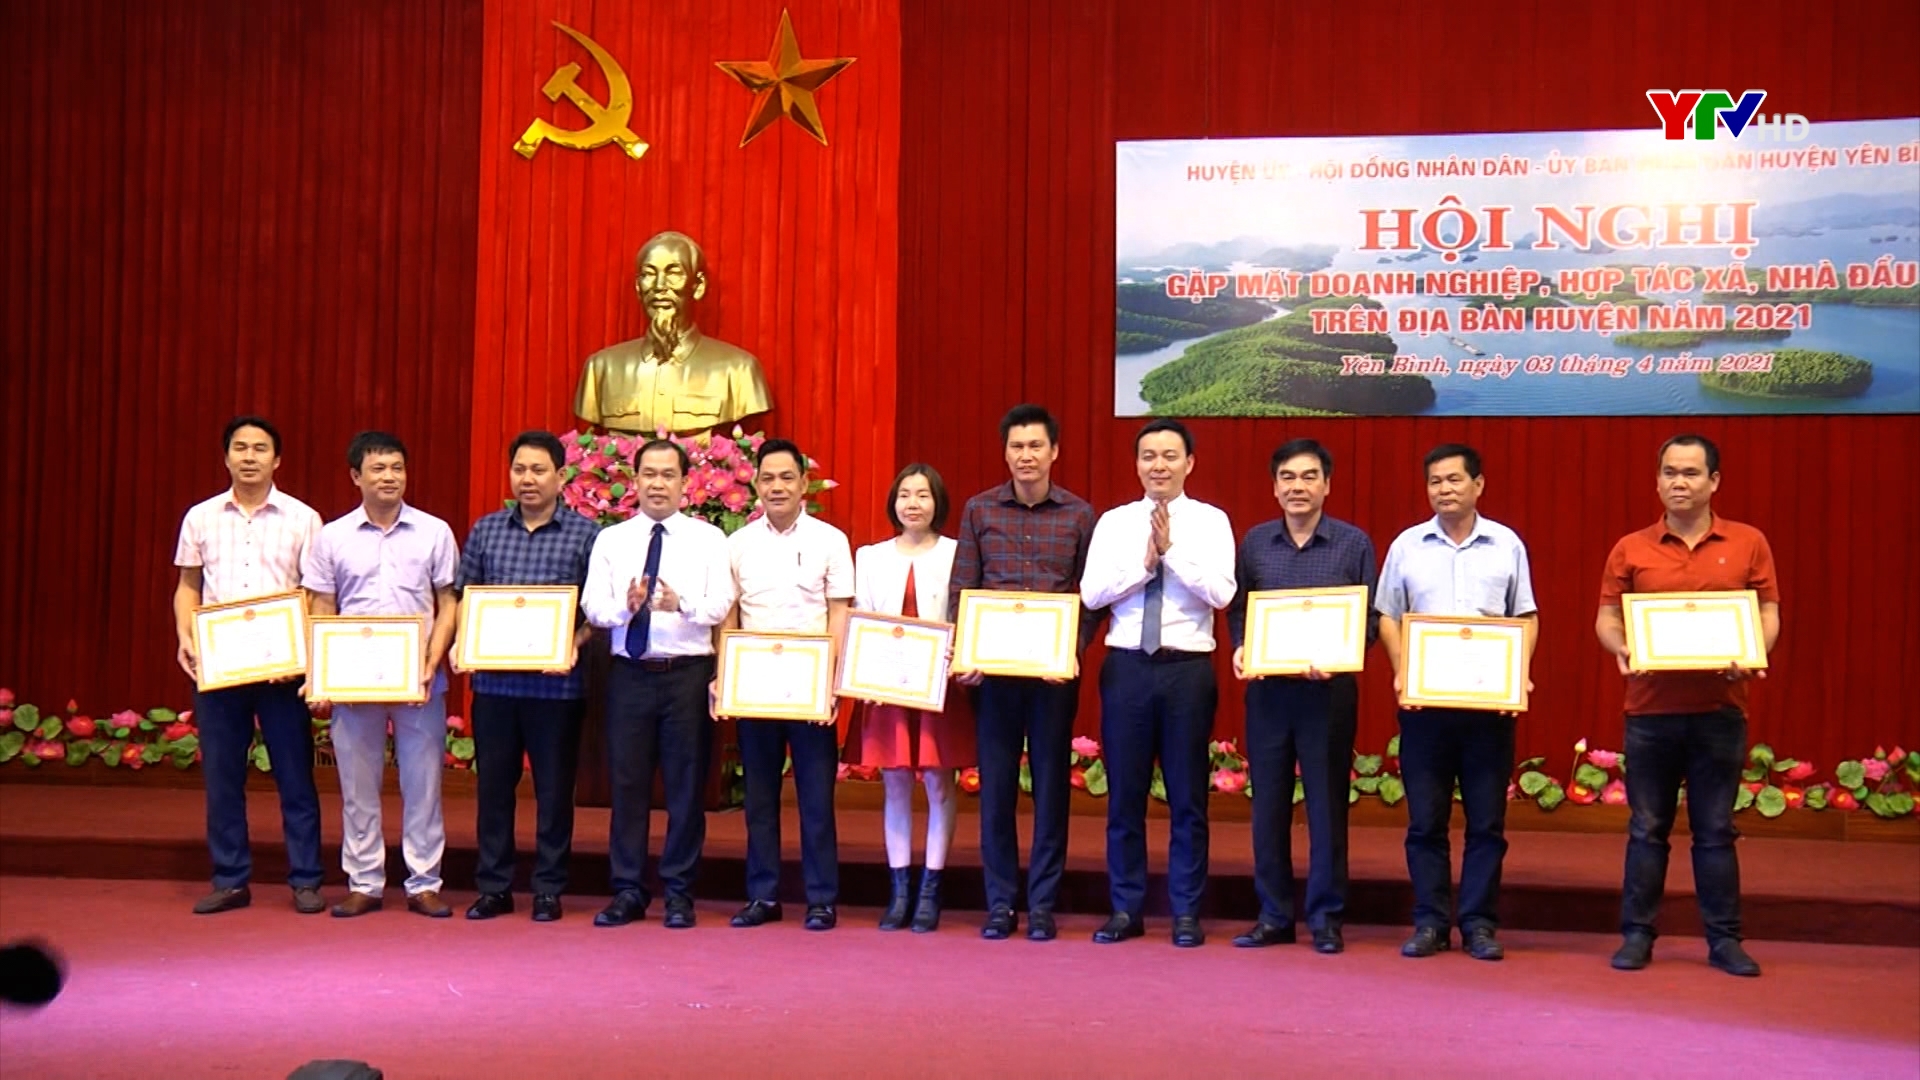 Huyện Yên Bình gặp mặt các doanh nghiệp, hợp tác xã, nhà đầu tư